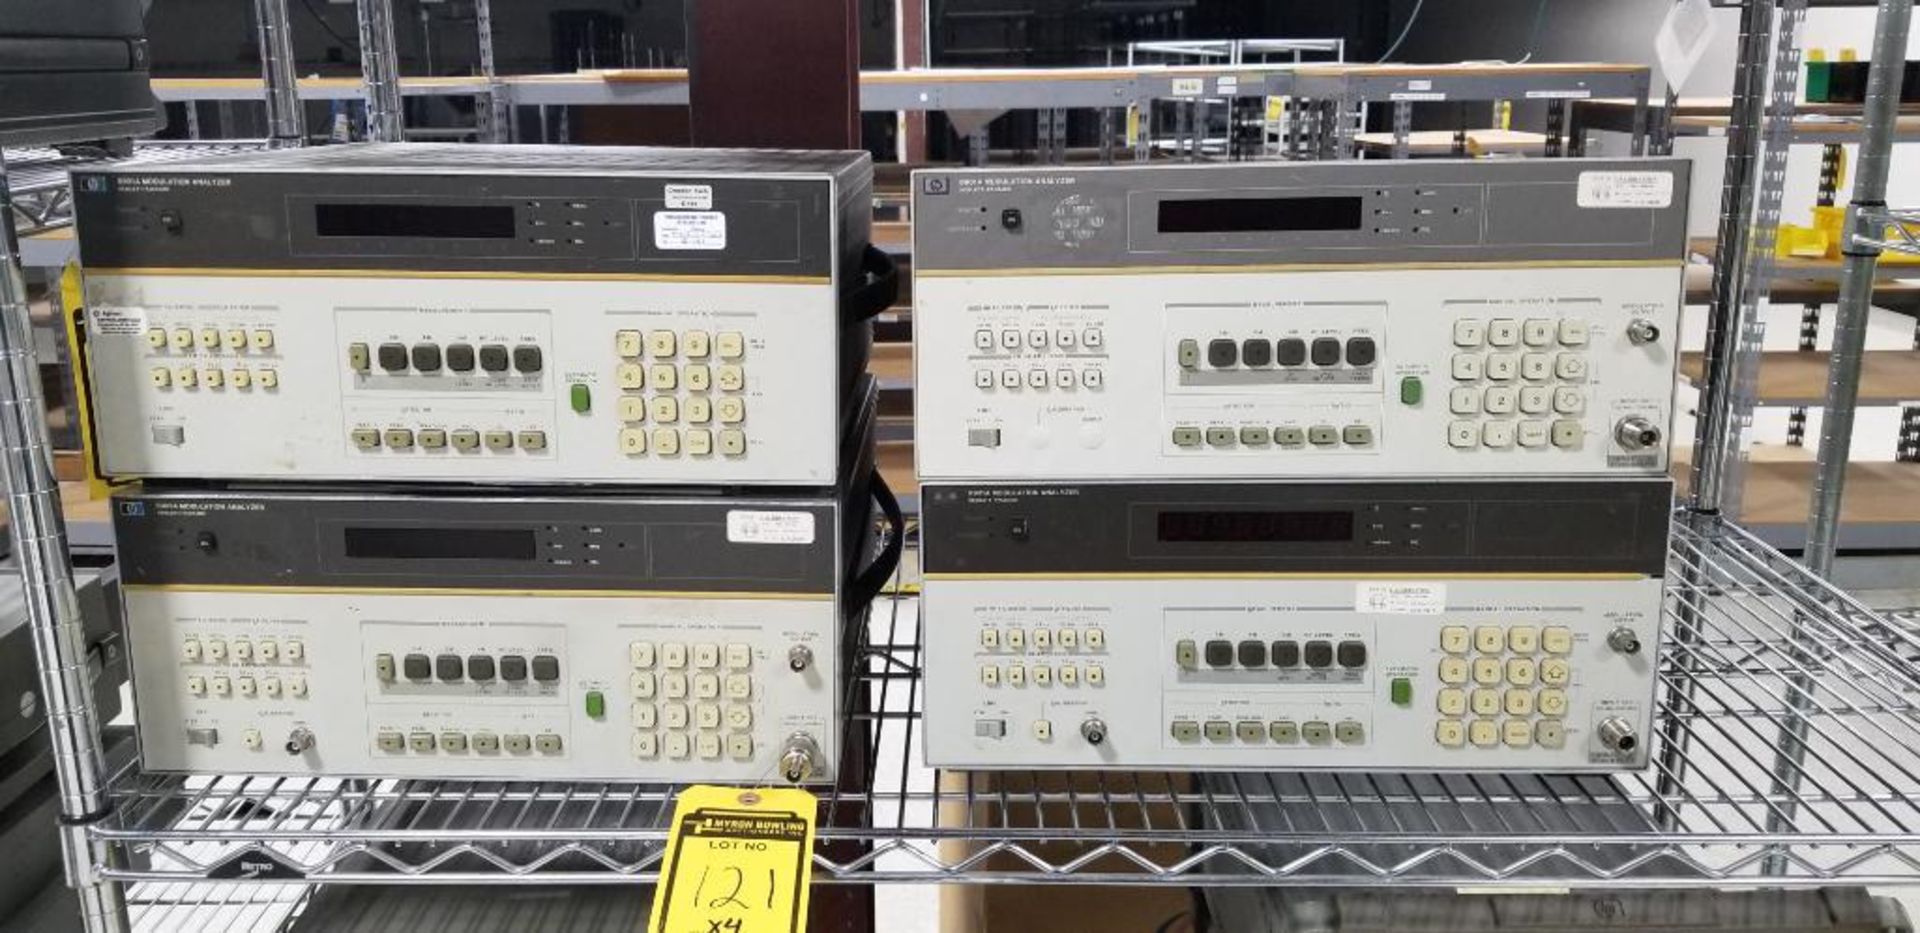 (4x) Hewlett Packard Modulation Analyzers, Model 8901A